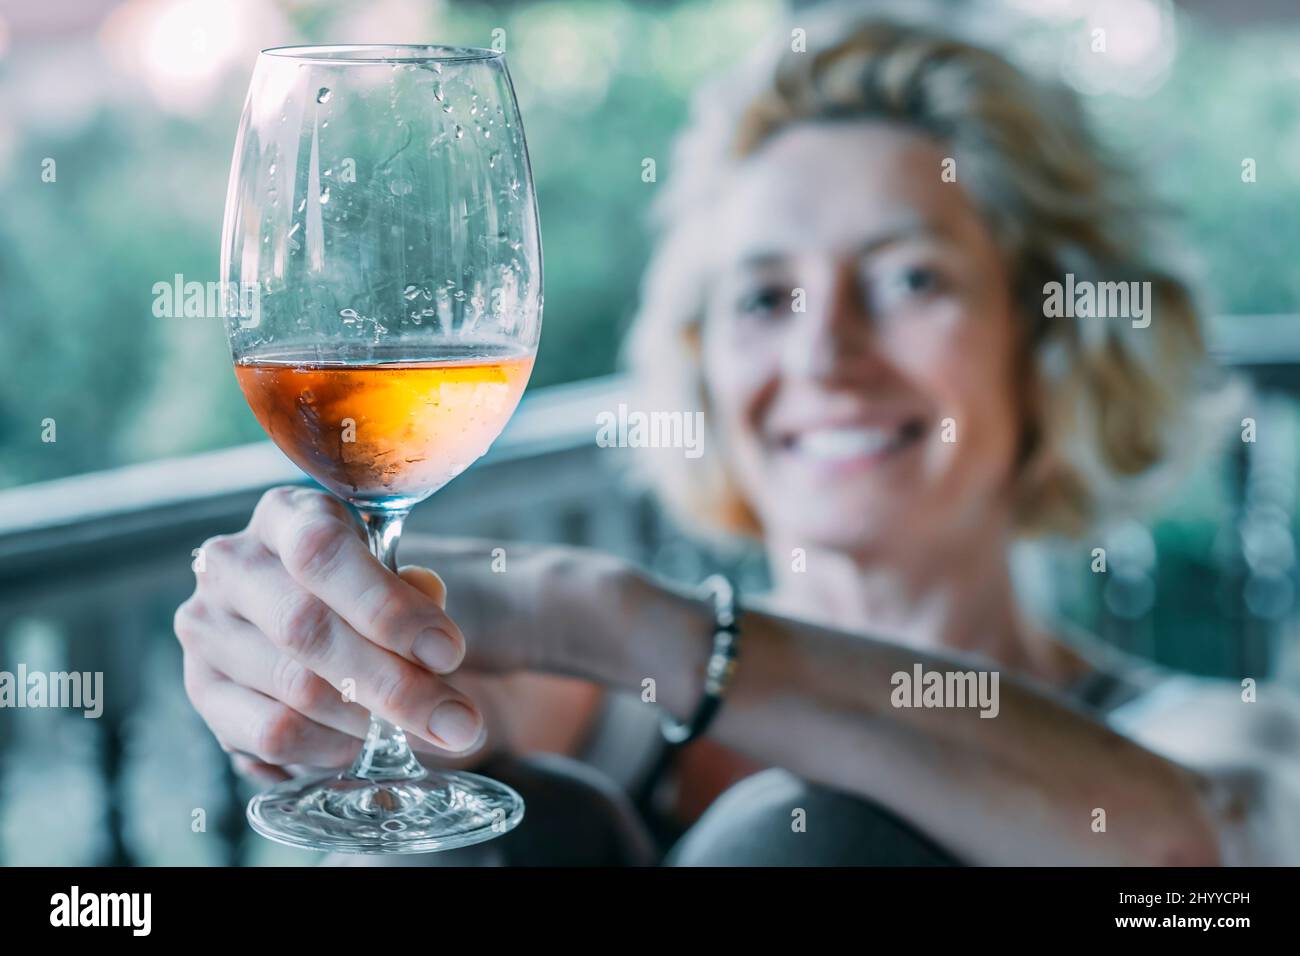 Porträt einer reifen kaukasischen blonden jungen Frau in den Fünfzigern, die auf der Veranda eines Hauses ein Glas Wein genießt. Lifestyle-Konzept. Stockfoto